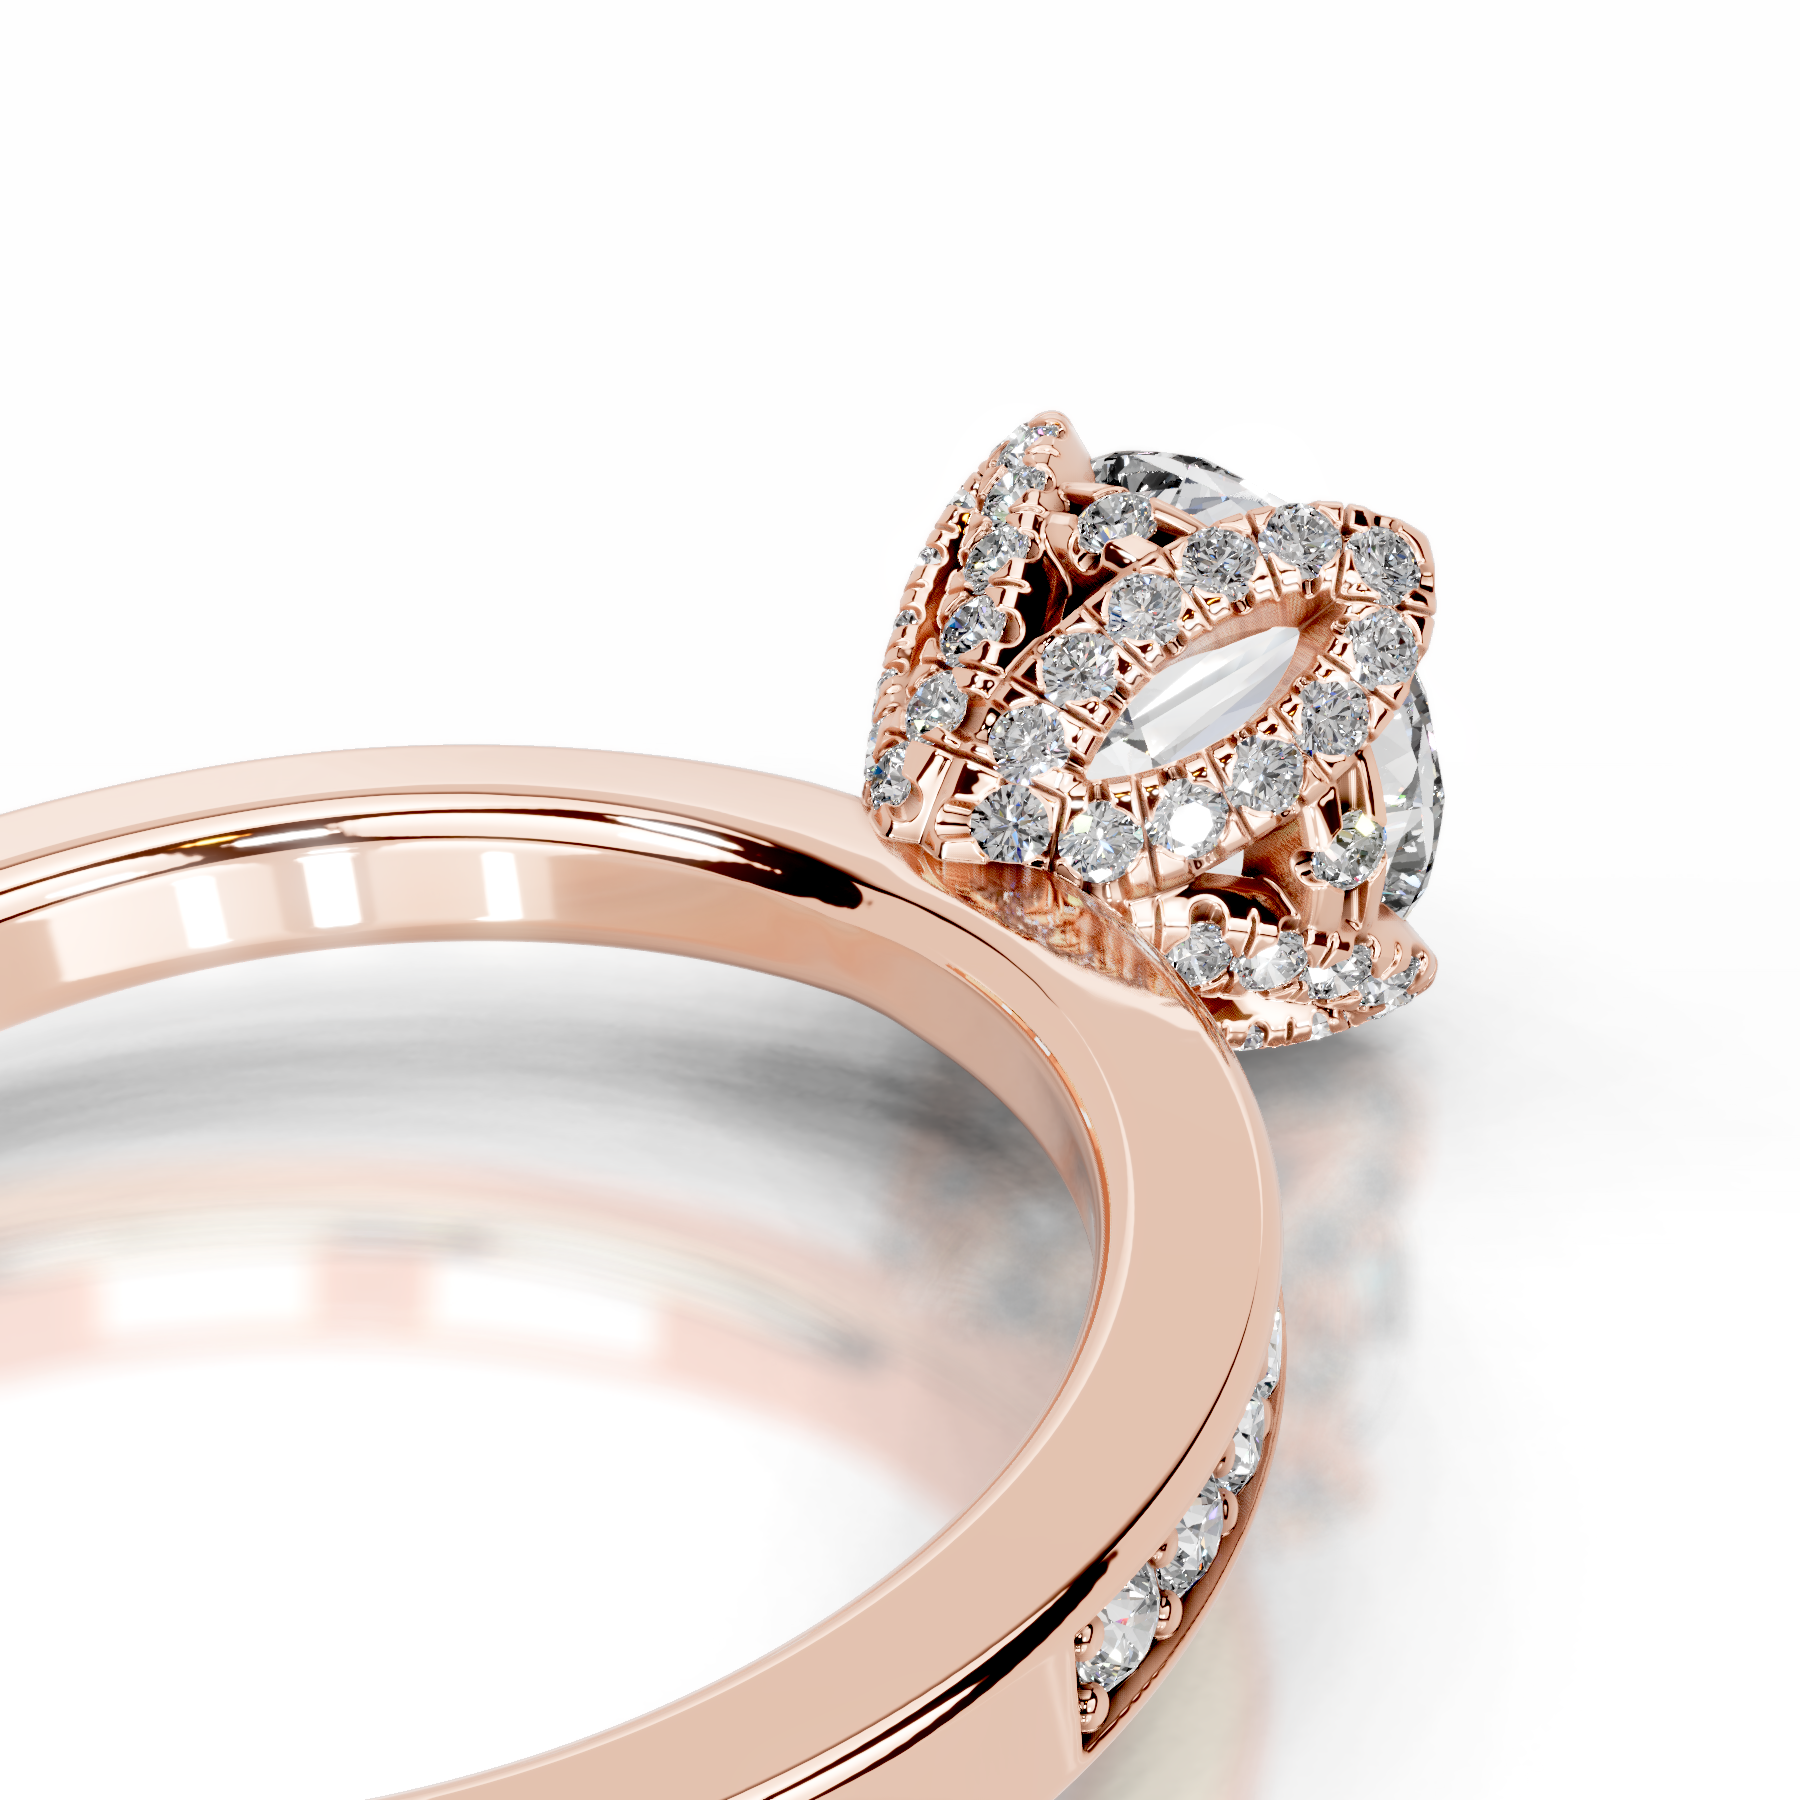 Daria Diamond Engagement Ring   (1.85 Carat) -14K Rose Gold